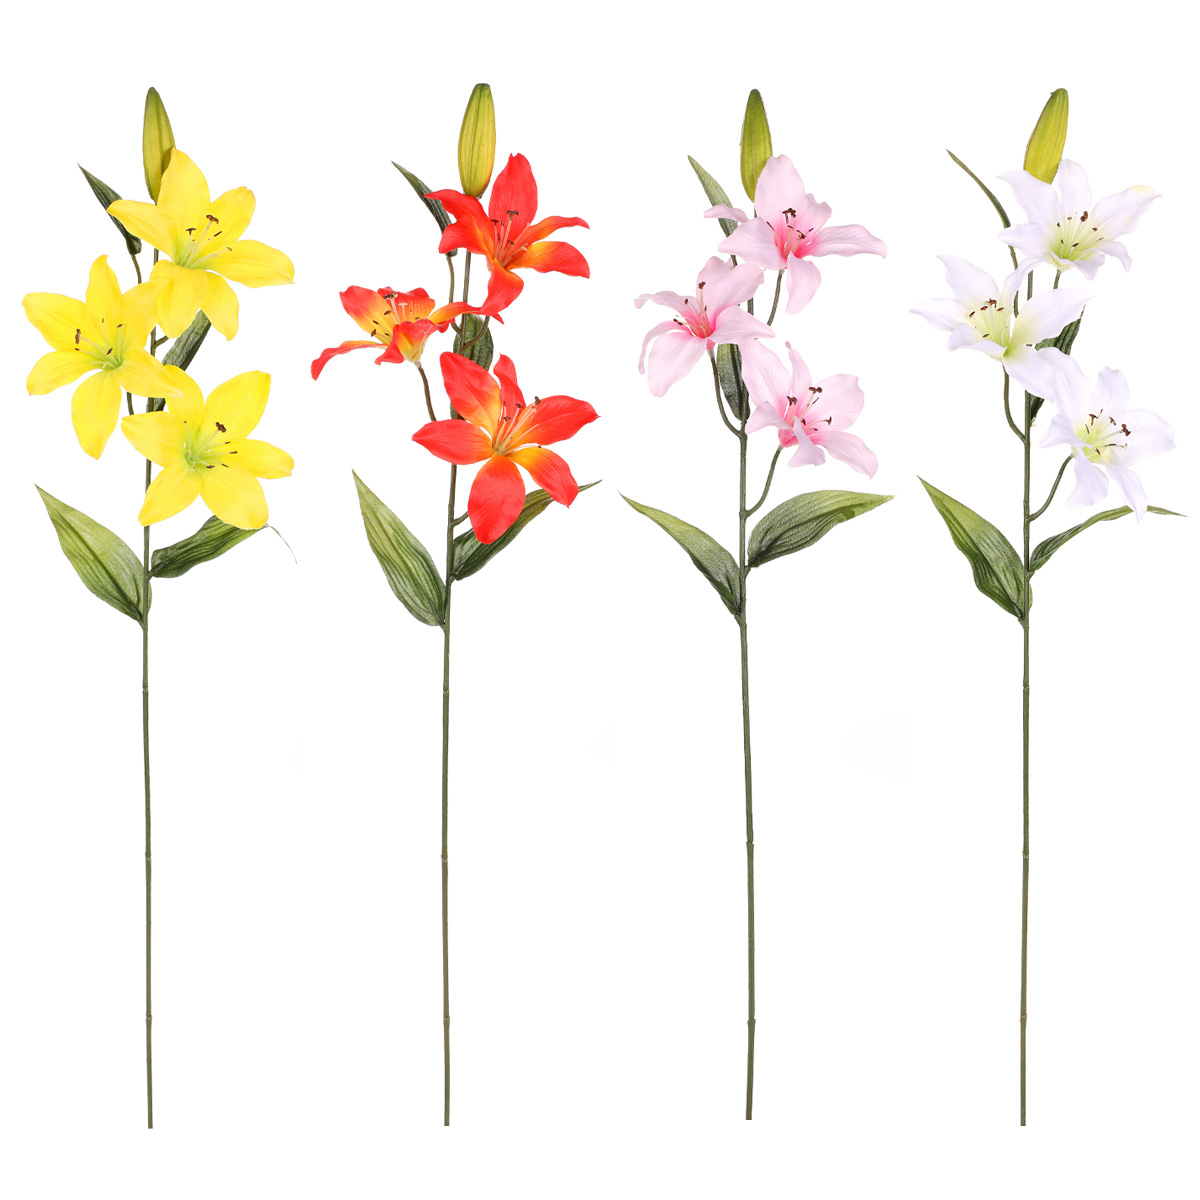 Lilie 3-květá, umělá květina, mix 4 barev